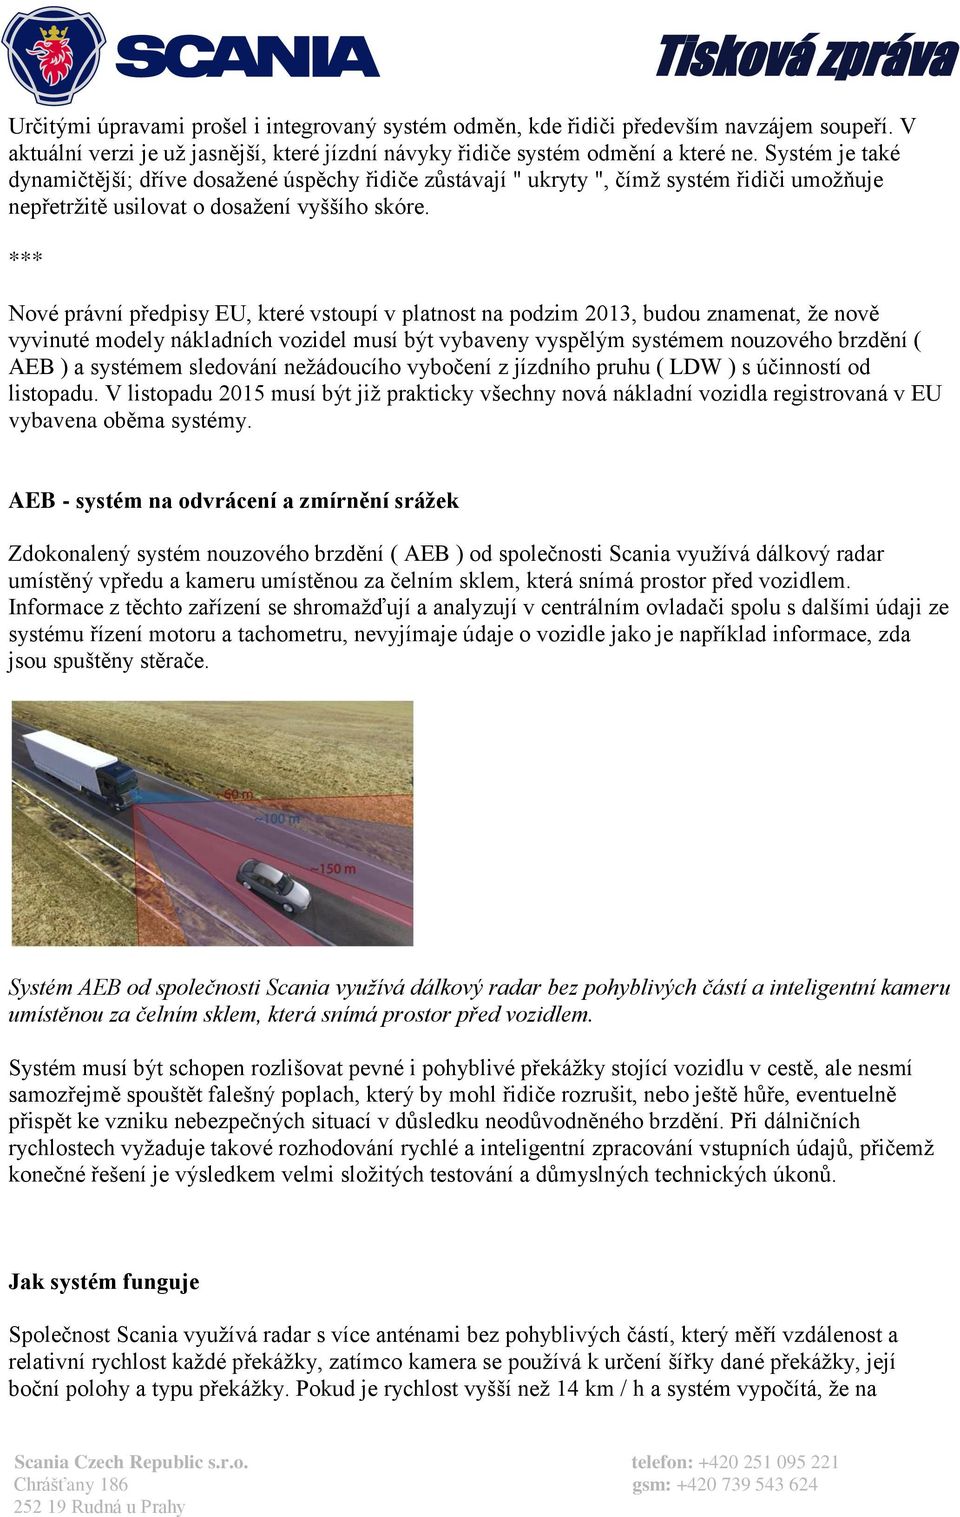 *** Nové právní předpisy EU, které vstoupí v platnost na podzim 2013, budou znamenat, že nově vyvinuté modely nákladních vozidel musí být vybaveny vyspělým systémem nouzového brzdění ( AEB ) a